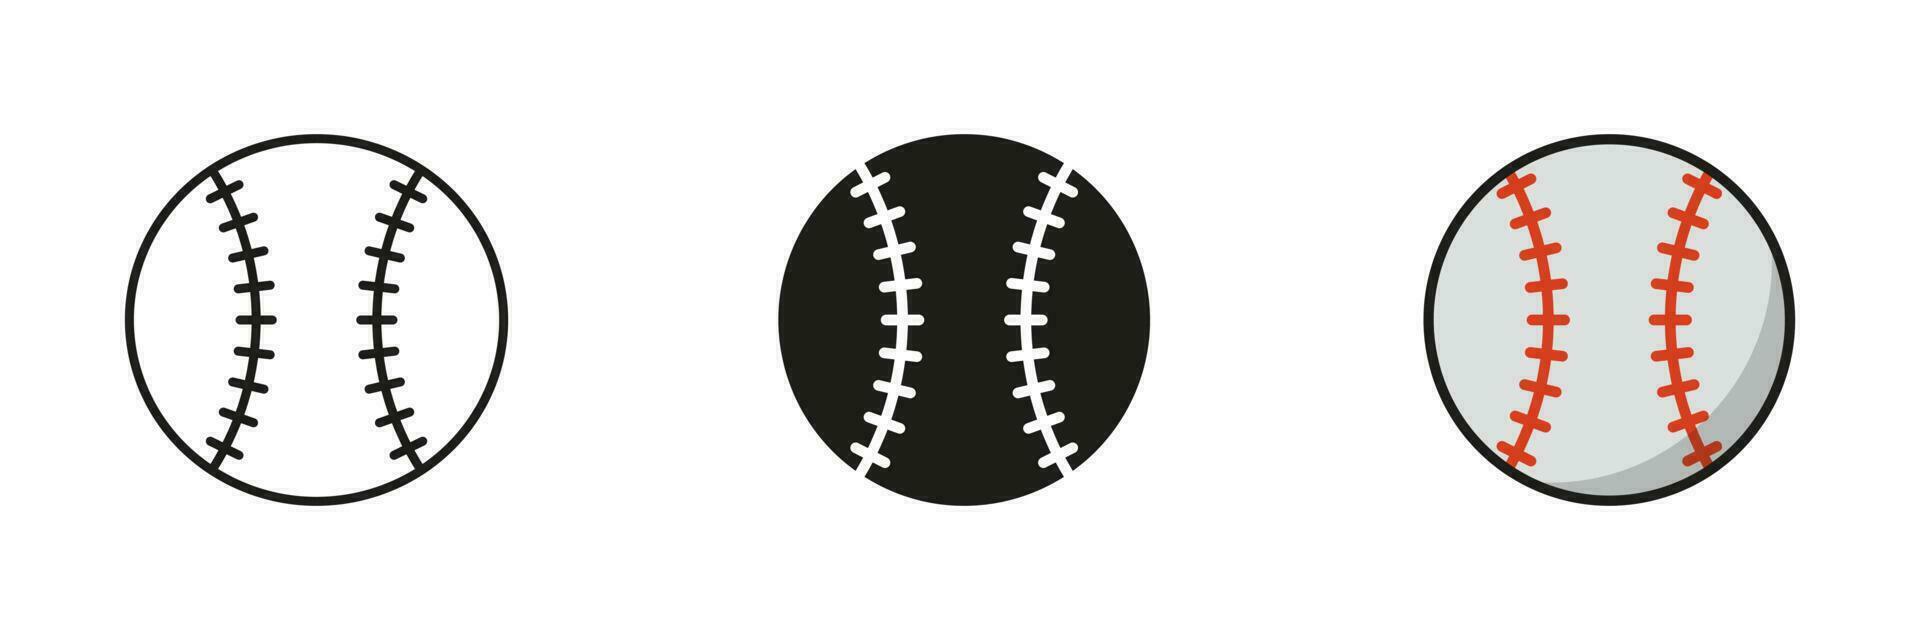 Baseball Ball Silhouette und Linie Symbol Satz. Ball zum abspielen Sport Spiel solide und Gliederung schwarz und Farbe Symbol Sammlung auf Weiß Hintergrund. isoliert Vektor Illustration.